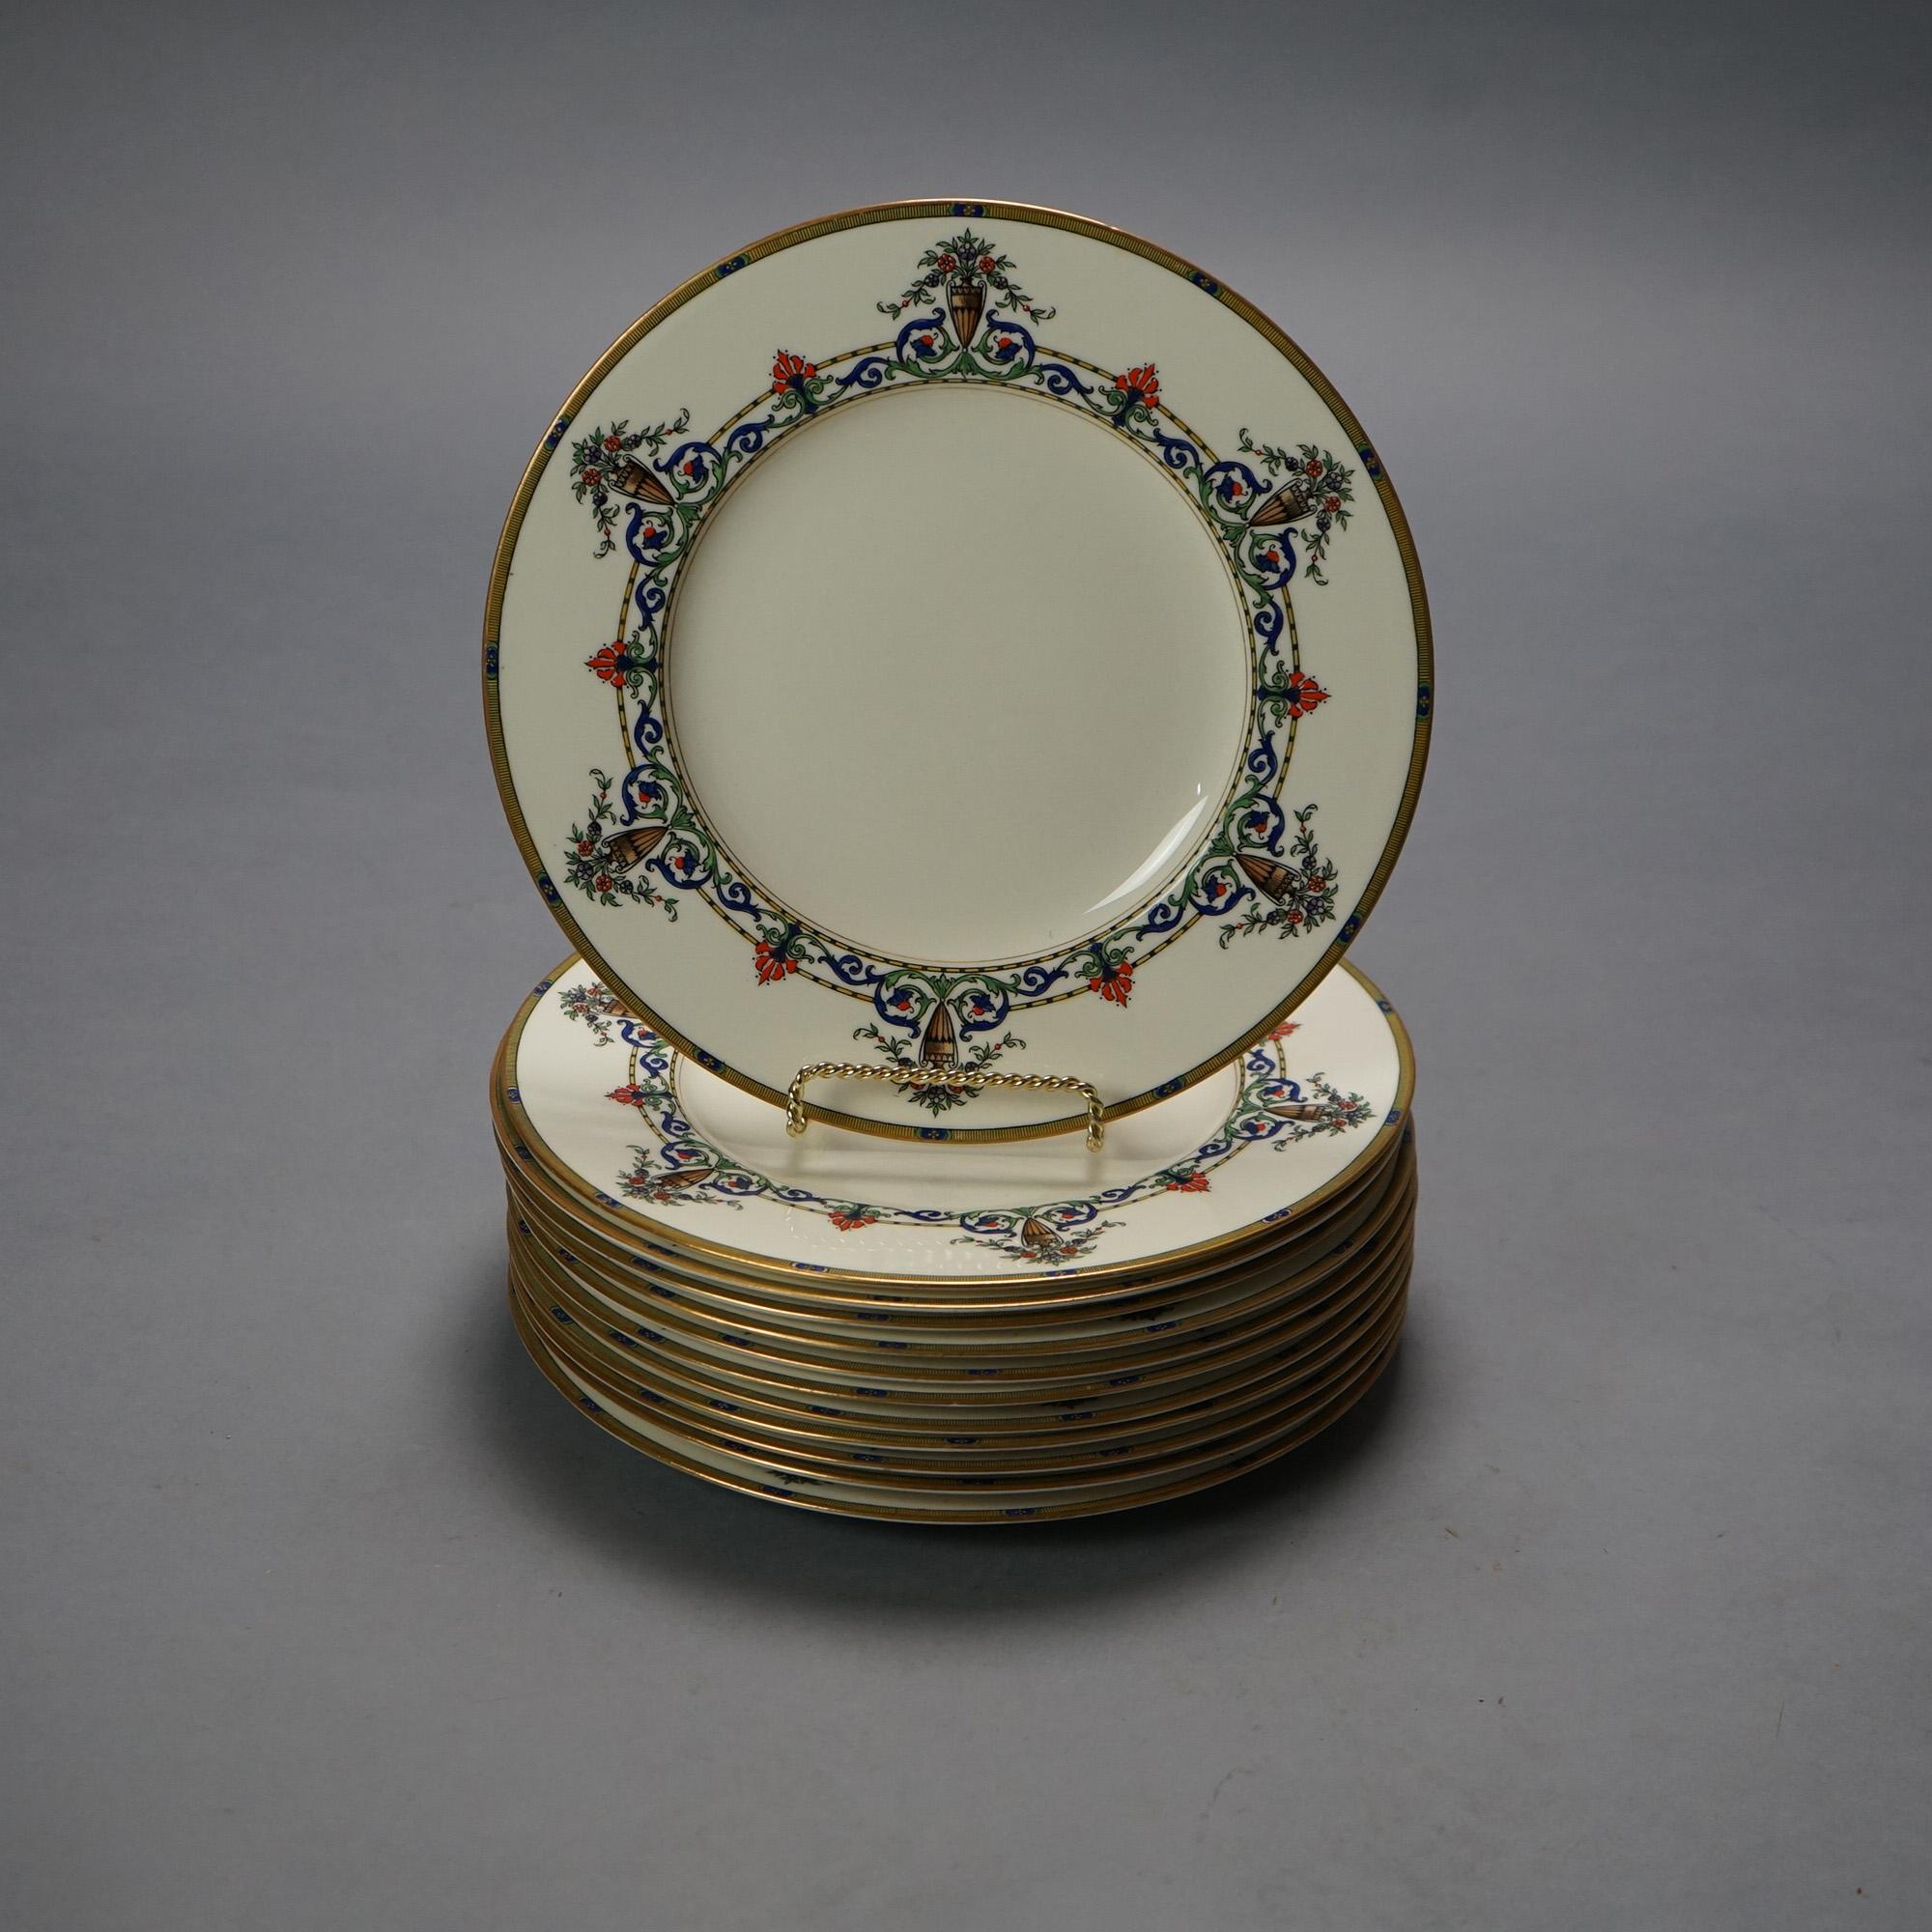 Douze assiettes anciennes en porcelaine de Chine Royal Worcester de Hardy & Hayes avec des urnes florales néoclassiques, des guirlandes et des rehauts dorés, vers 1910

Mesures - .75 